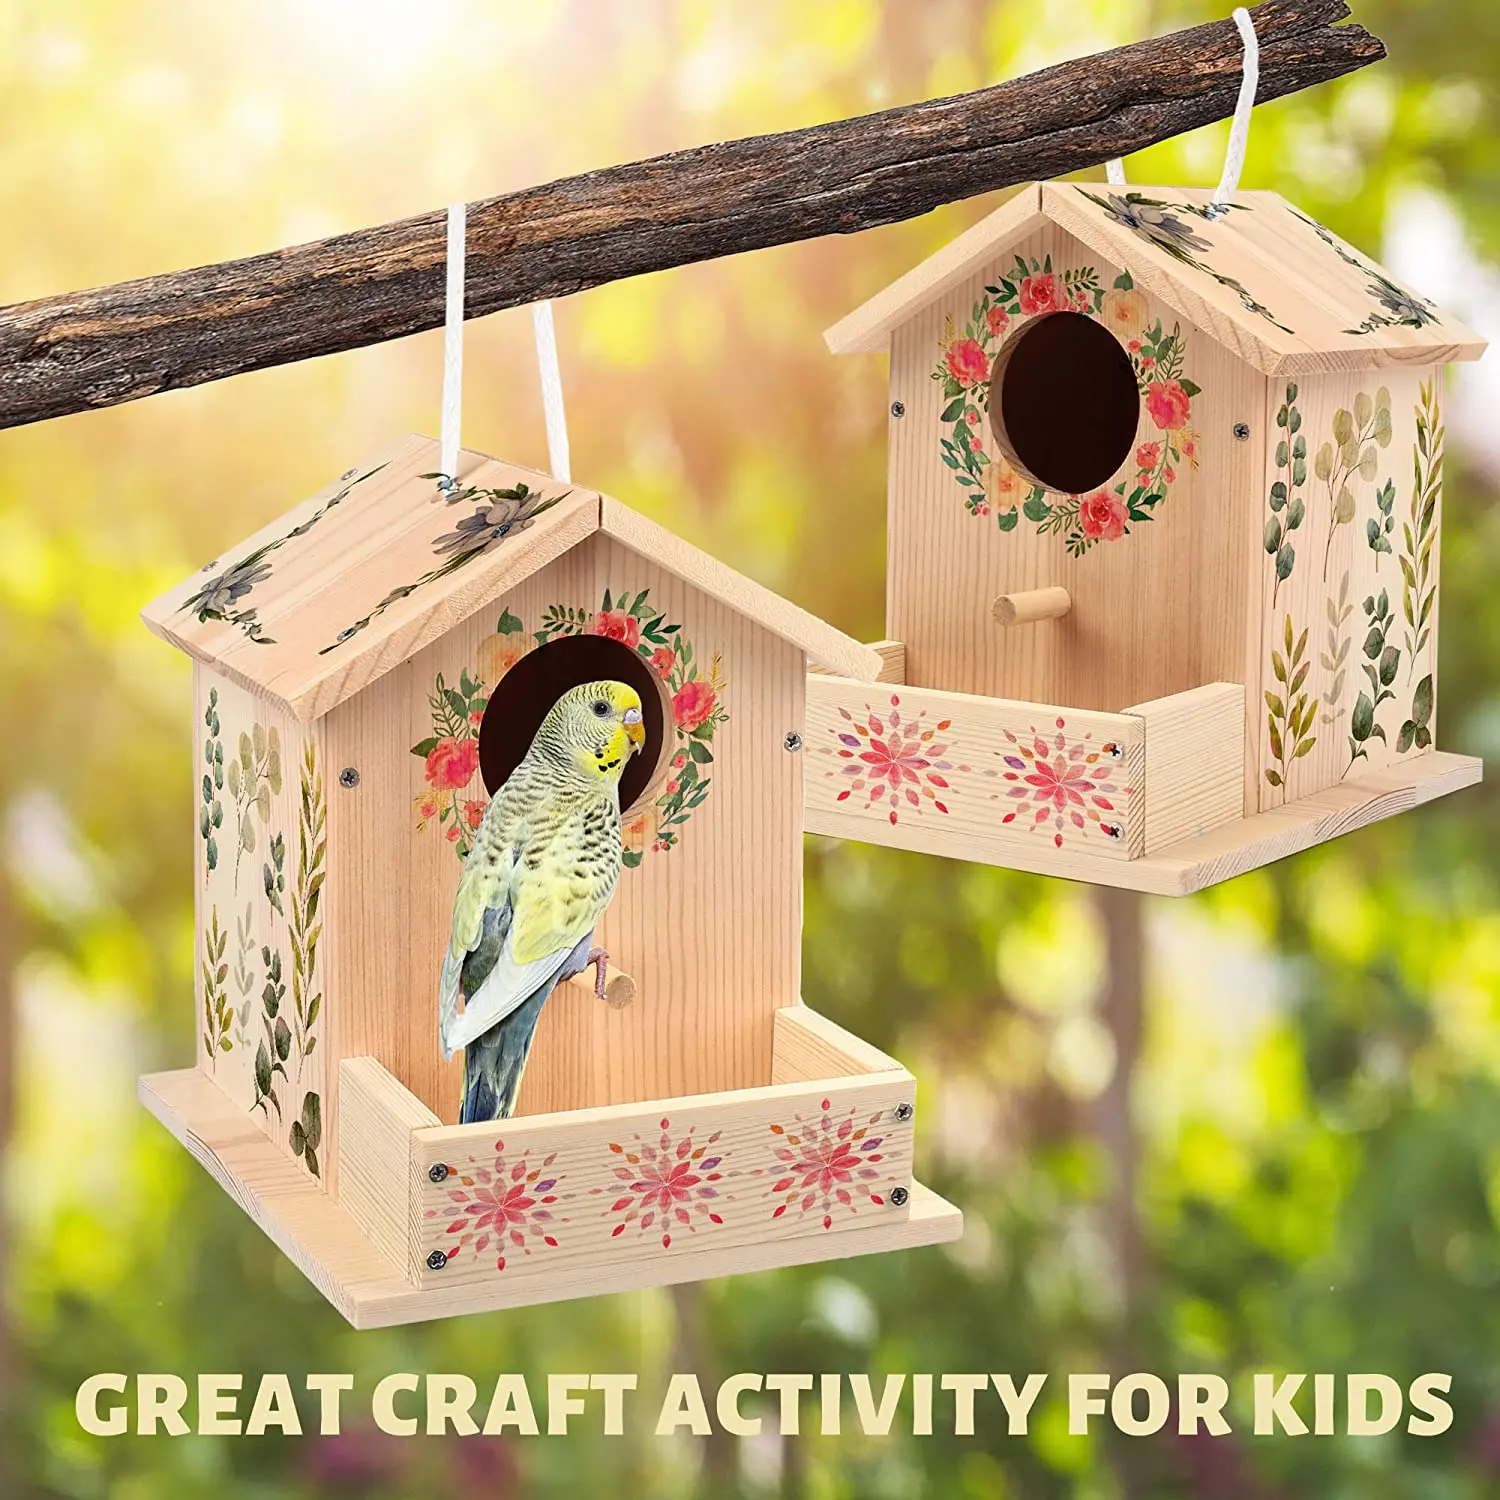 مجموعات لوحات خشبية DIY للأطفال والبالغين ، مستلزمات الرسم والفنون والحرف اليدوية للأطفال والبالغين لبناء تصميم صديق للطيور